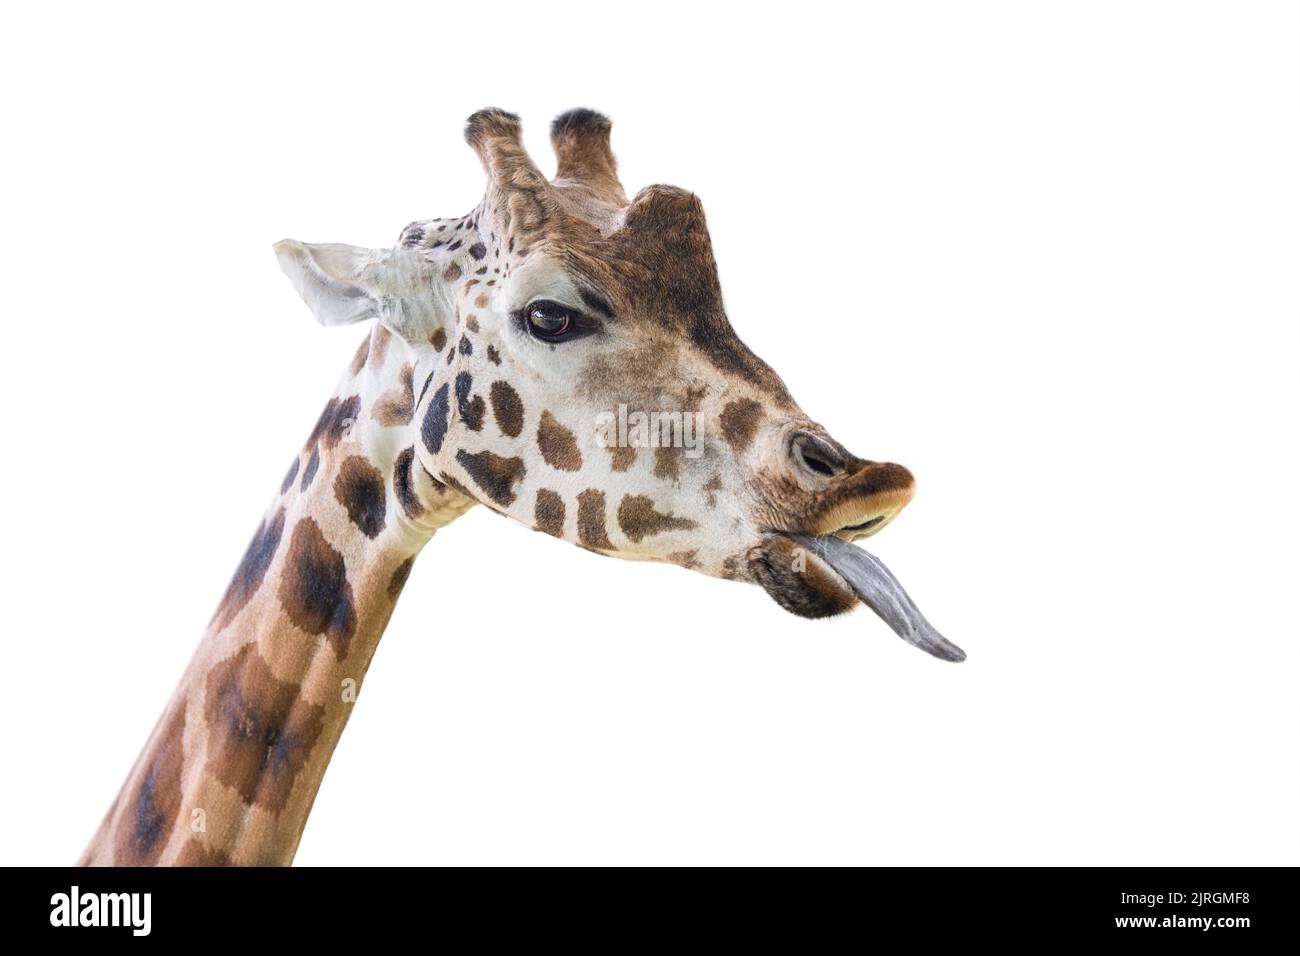 Giraffe zeigt eine lange Zunge. Lustige Giraffe isoliert auf weißem Hintergrund. Nahaufnahme des Kopfes einer Giraffe mit der Zunge, die nach außen hängt. Stockfoto